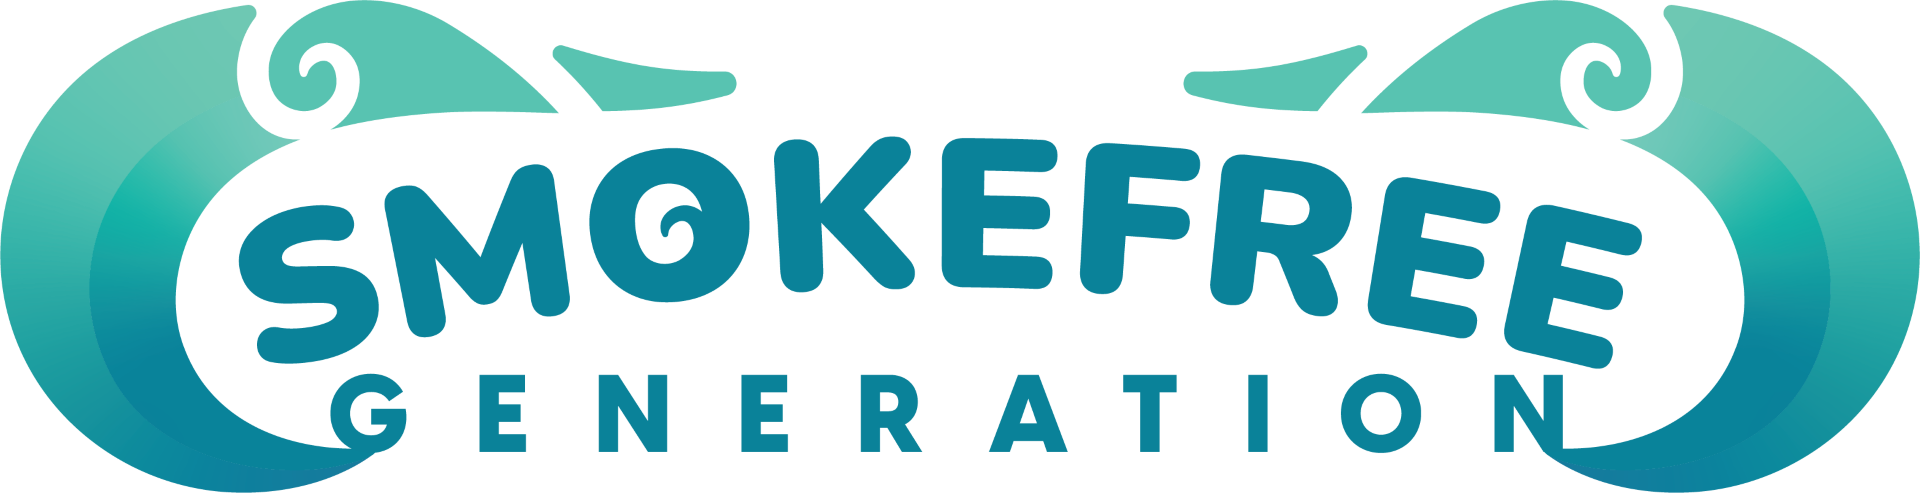 Smokefree Generation